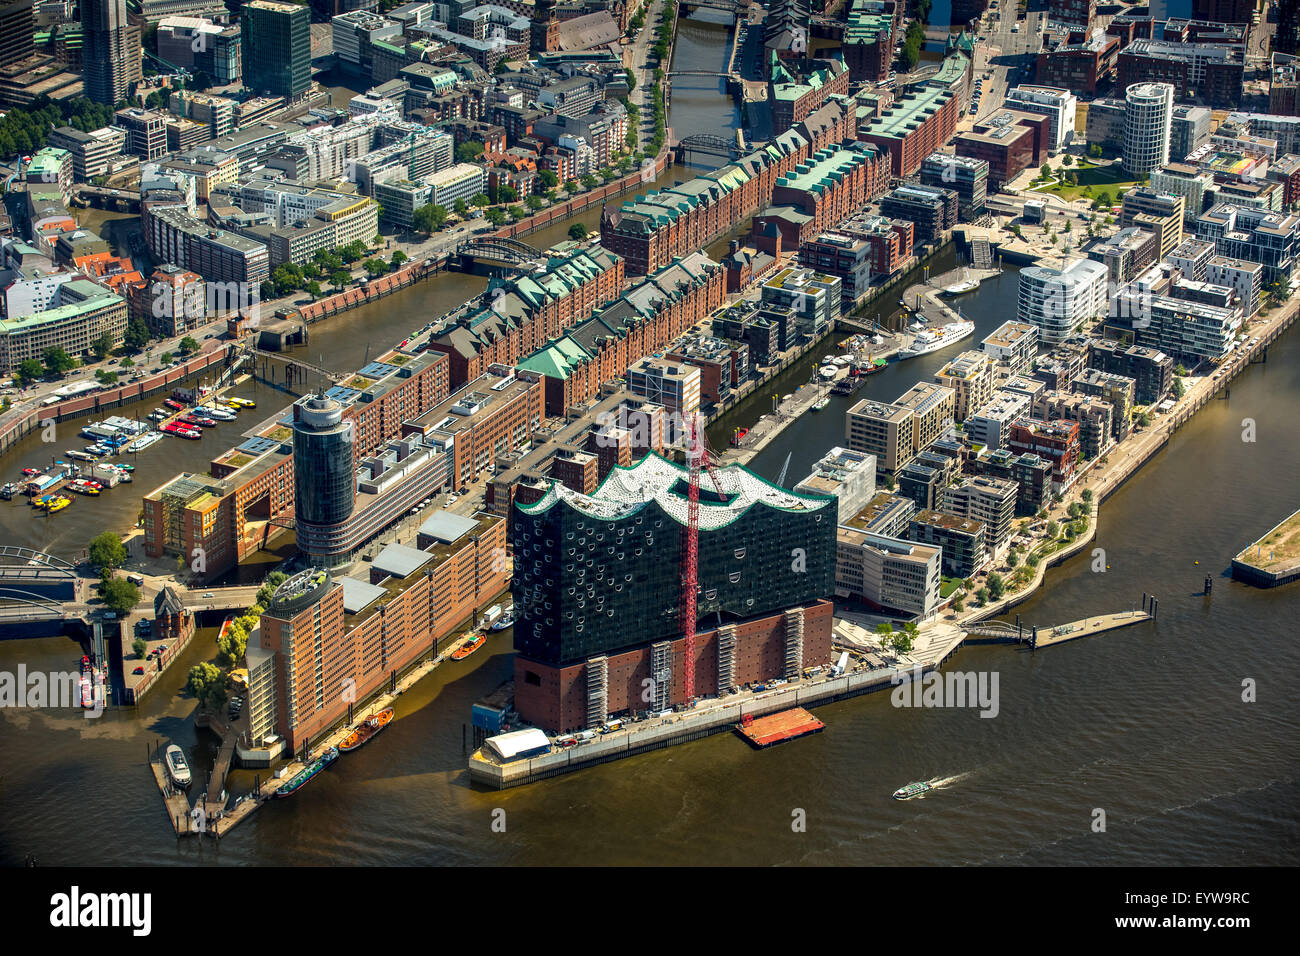 Elbphilharmonie, HafenCity, Speicherstadt, UNESCO-Weltkulturerbe, der Hamburger Hafen, Elbe, Hamburg, Deutschland Stockfoto